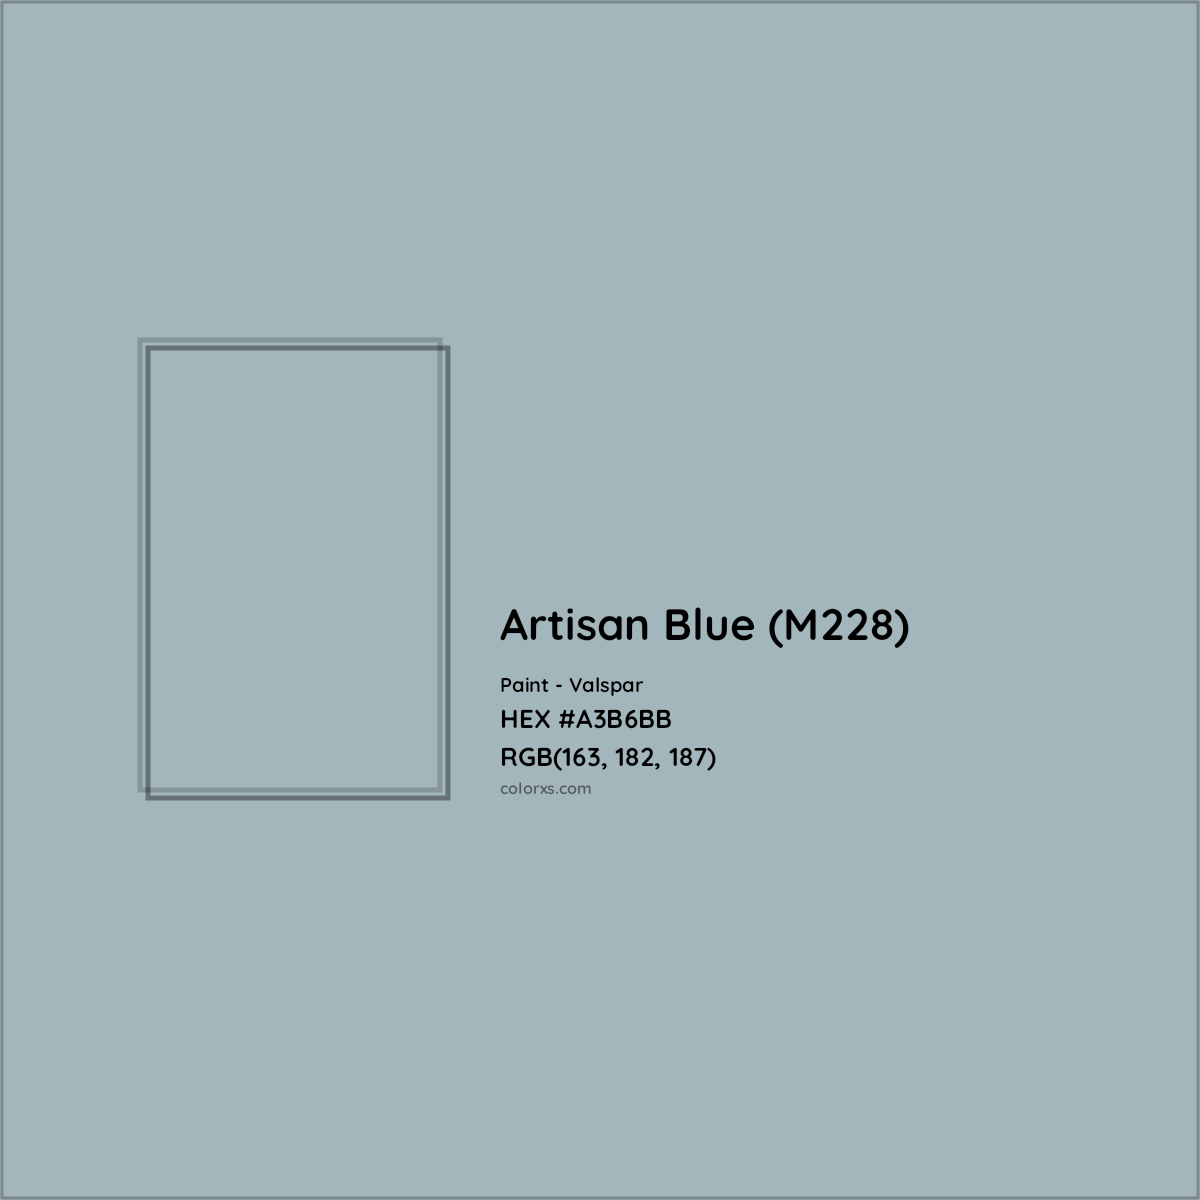 HEX #A3B6BB Artisan Blue (M228) Paint Valspar - Color Code